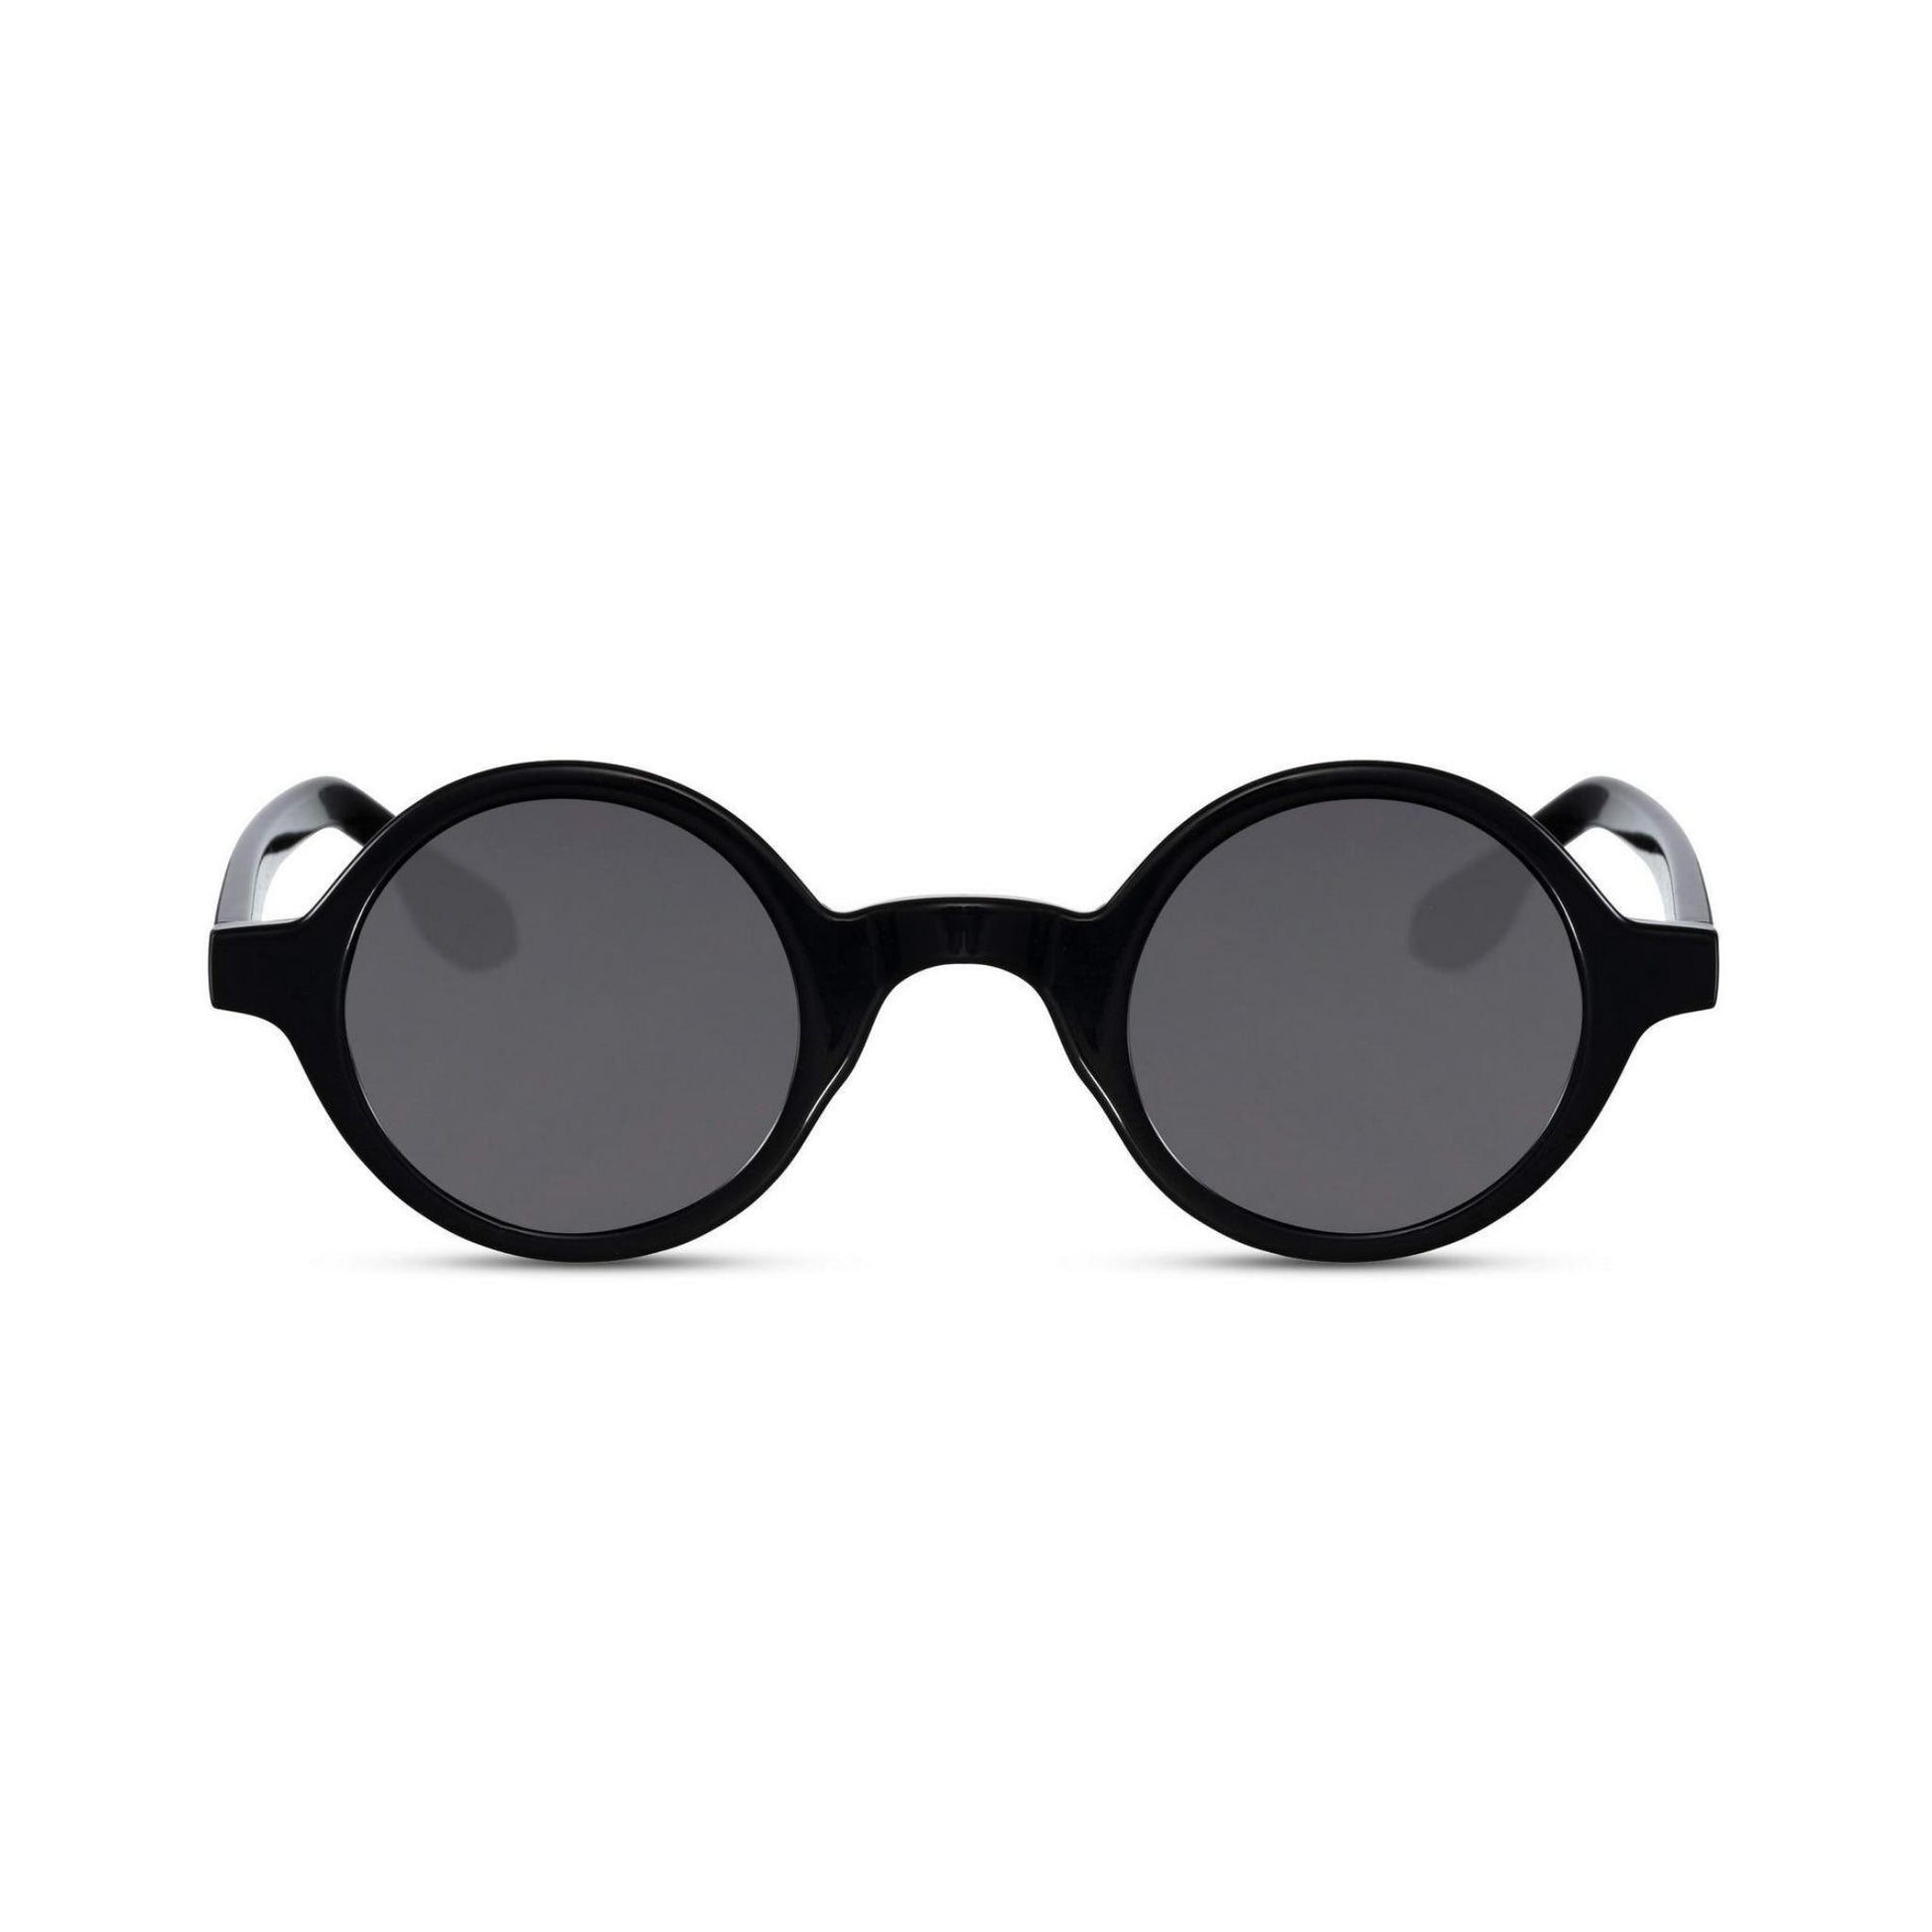 Στρογγυλά Γυαλιά Ηλίου Aurora της Exposure Sunglasses με προστασία UV400 σε μαύρο χρώμα σκελετού και μαύρο φακό.